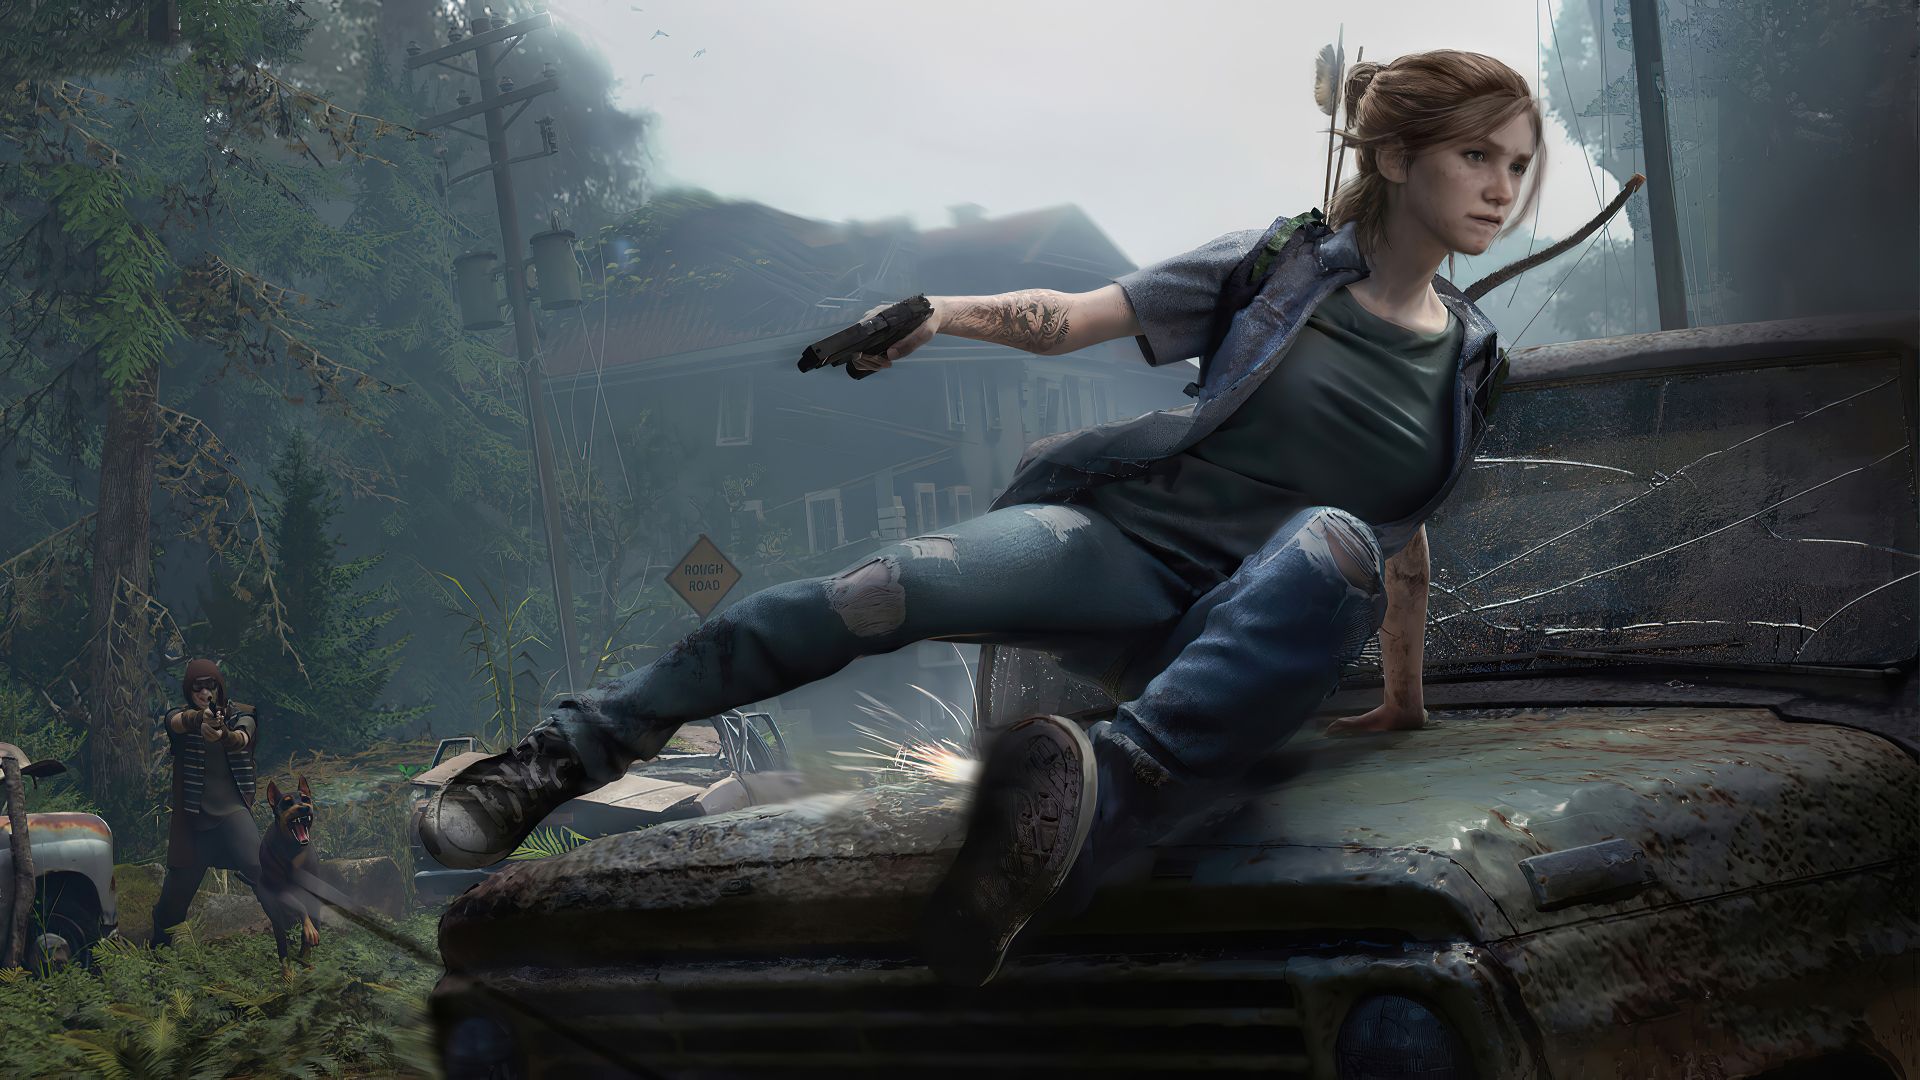 Wallpaper The Last of Us, Ellie, game 2020, fan art